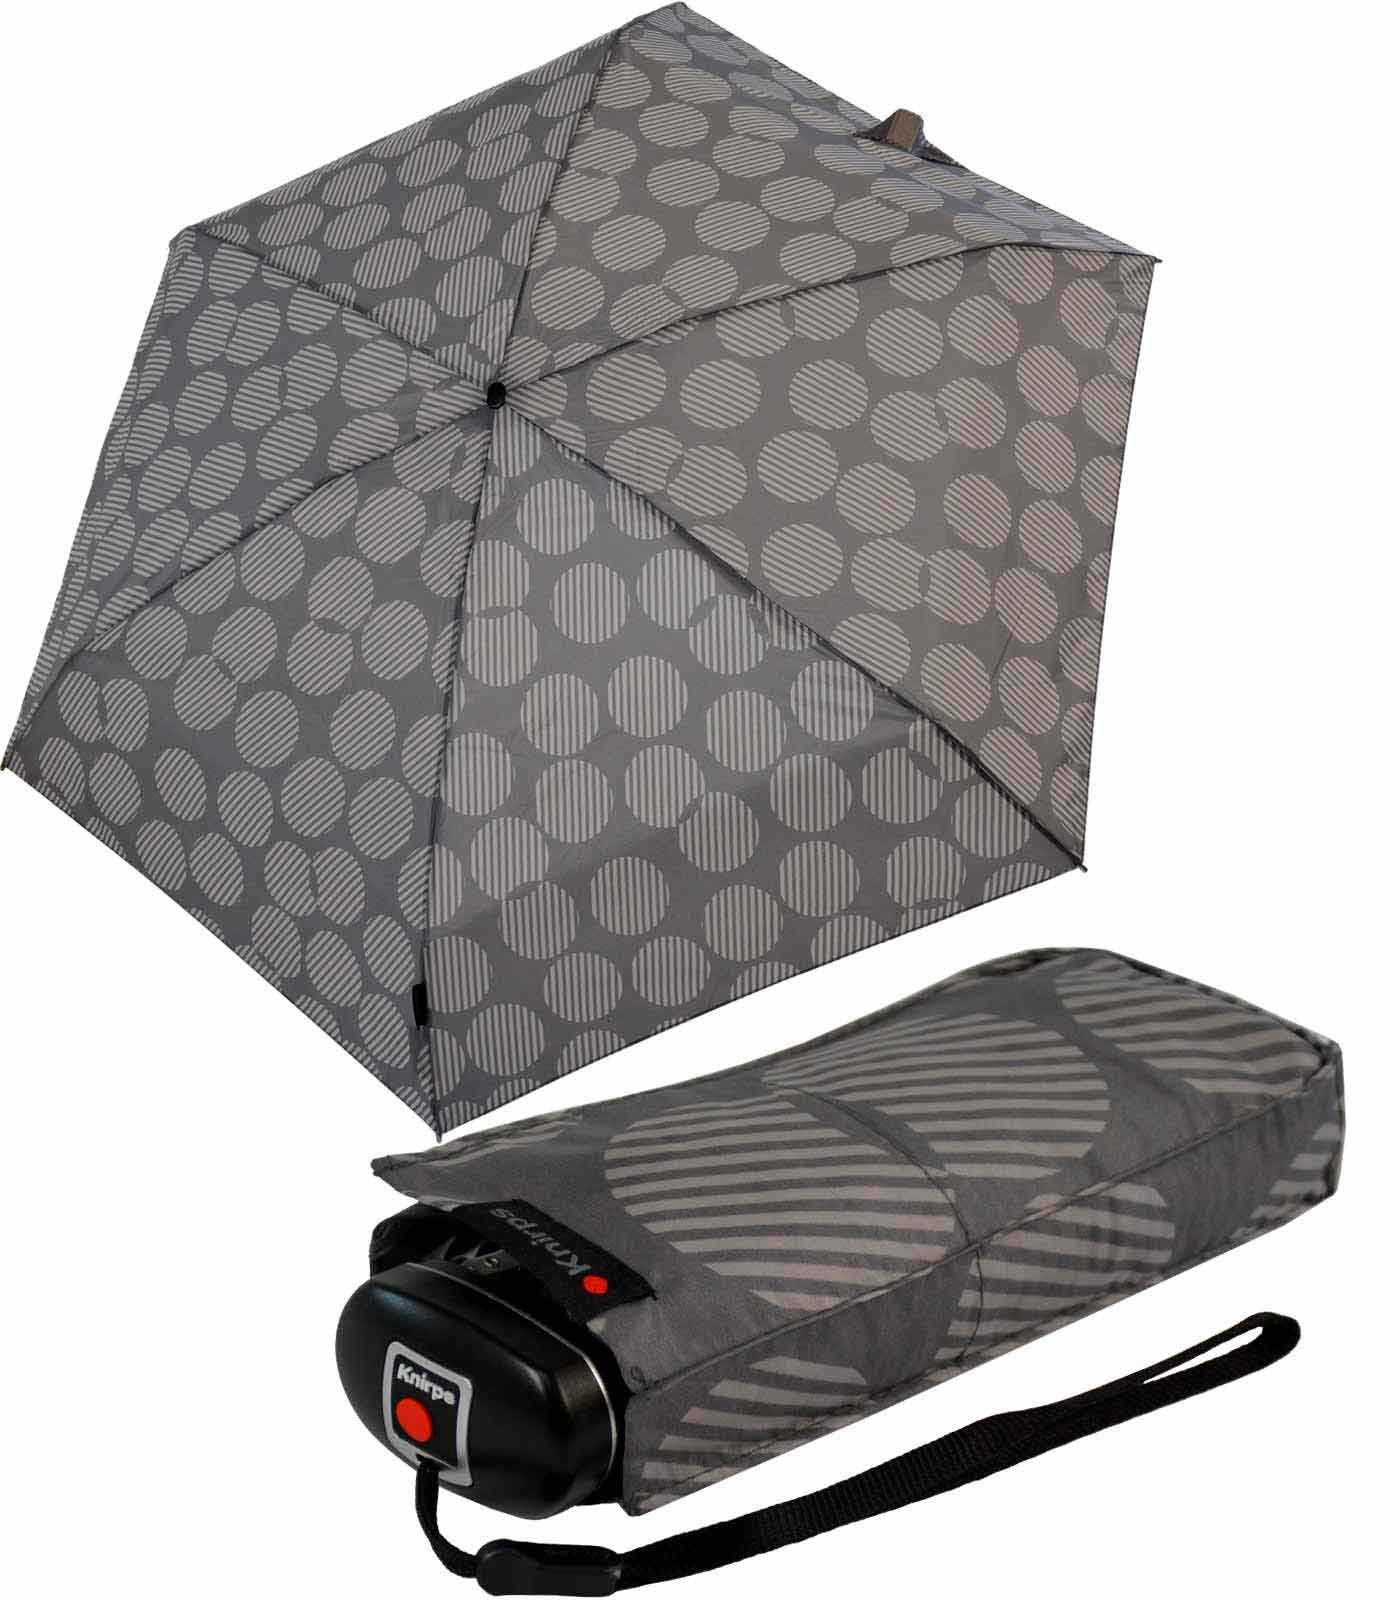 Knirps® der Tasche Mini-Schirm jede passt der kompakt leicht Taschenregenschirm zuverlässige klein Begleiter, in UV-Schutz, Travel